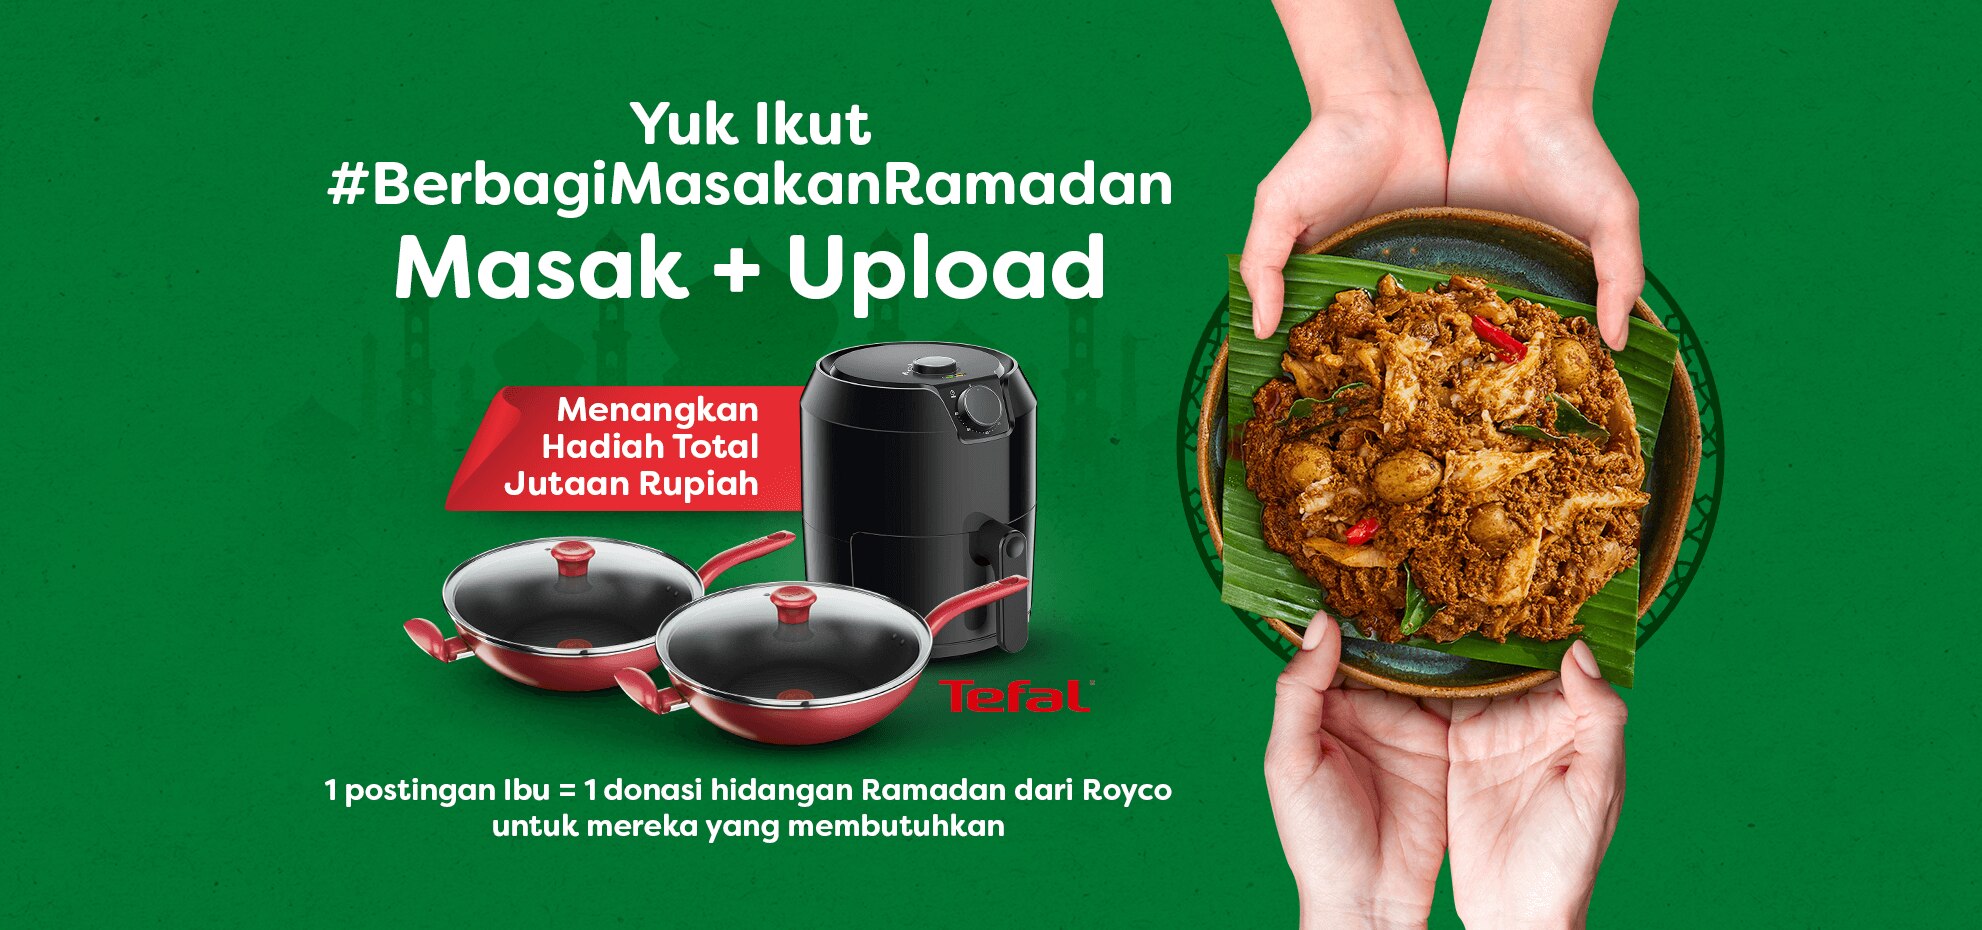 masak upload untuk berbagi masakan ramadan